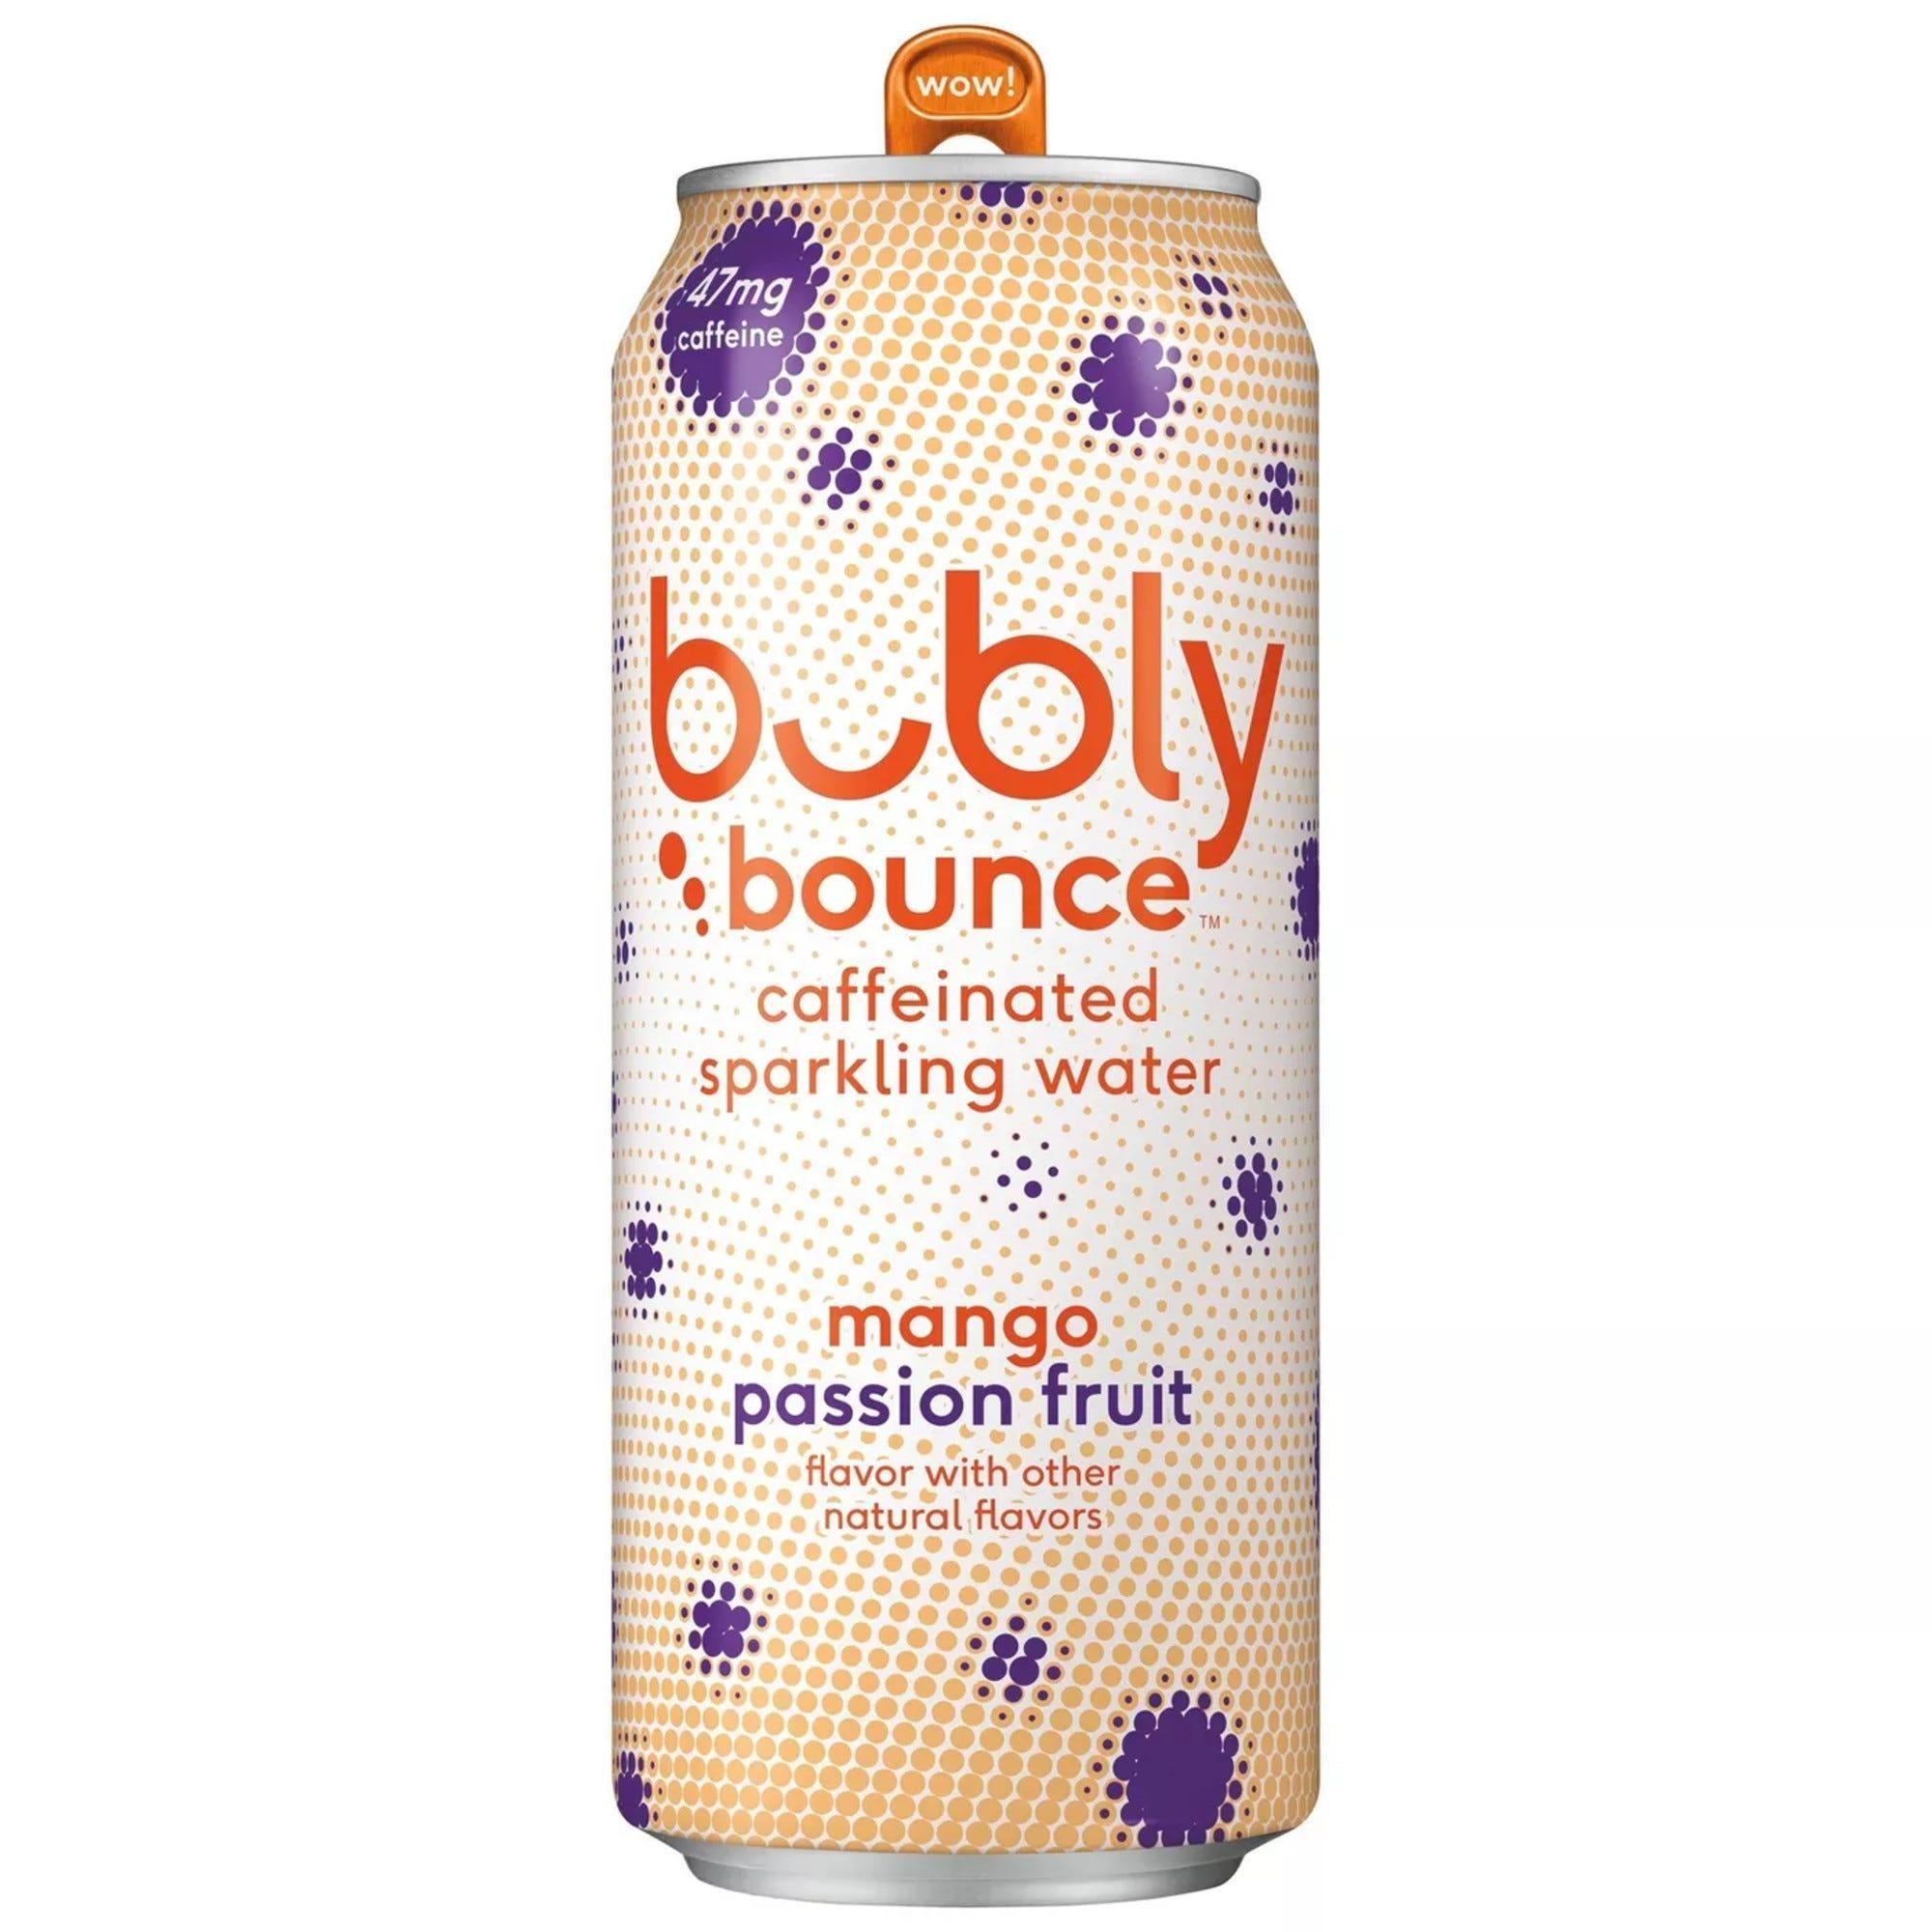 Bubly Bounce Mango Passionfruit